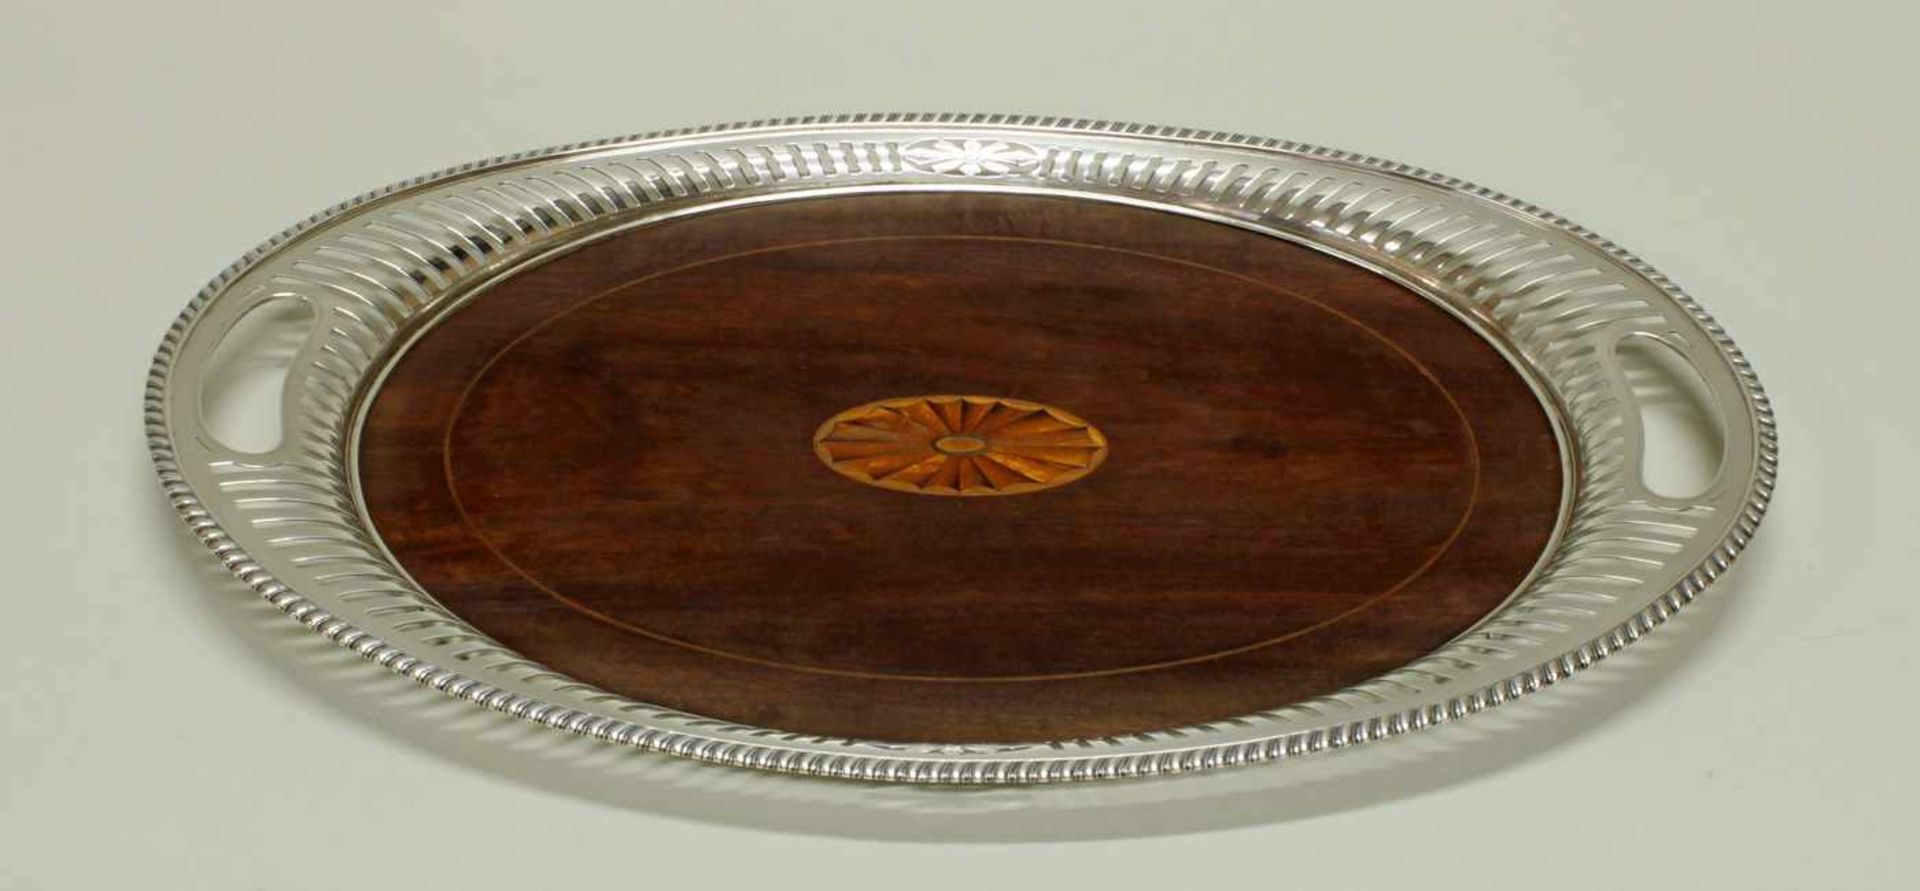 Tablett, Silber 925, oval, Spiegel aus Mahagoni mit Fächerintarsie, Rand à jour gearbeitet mit